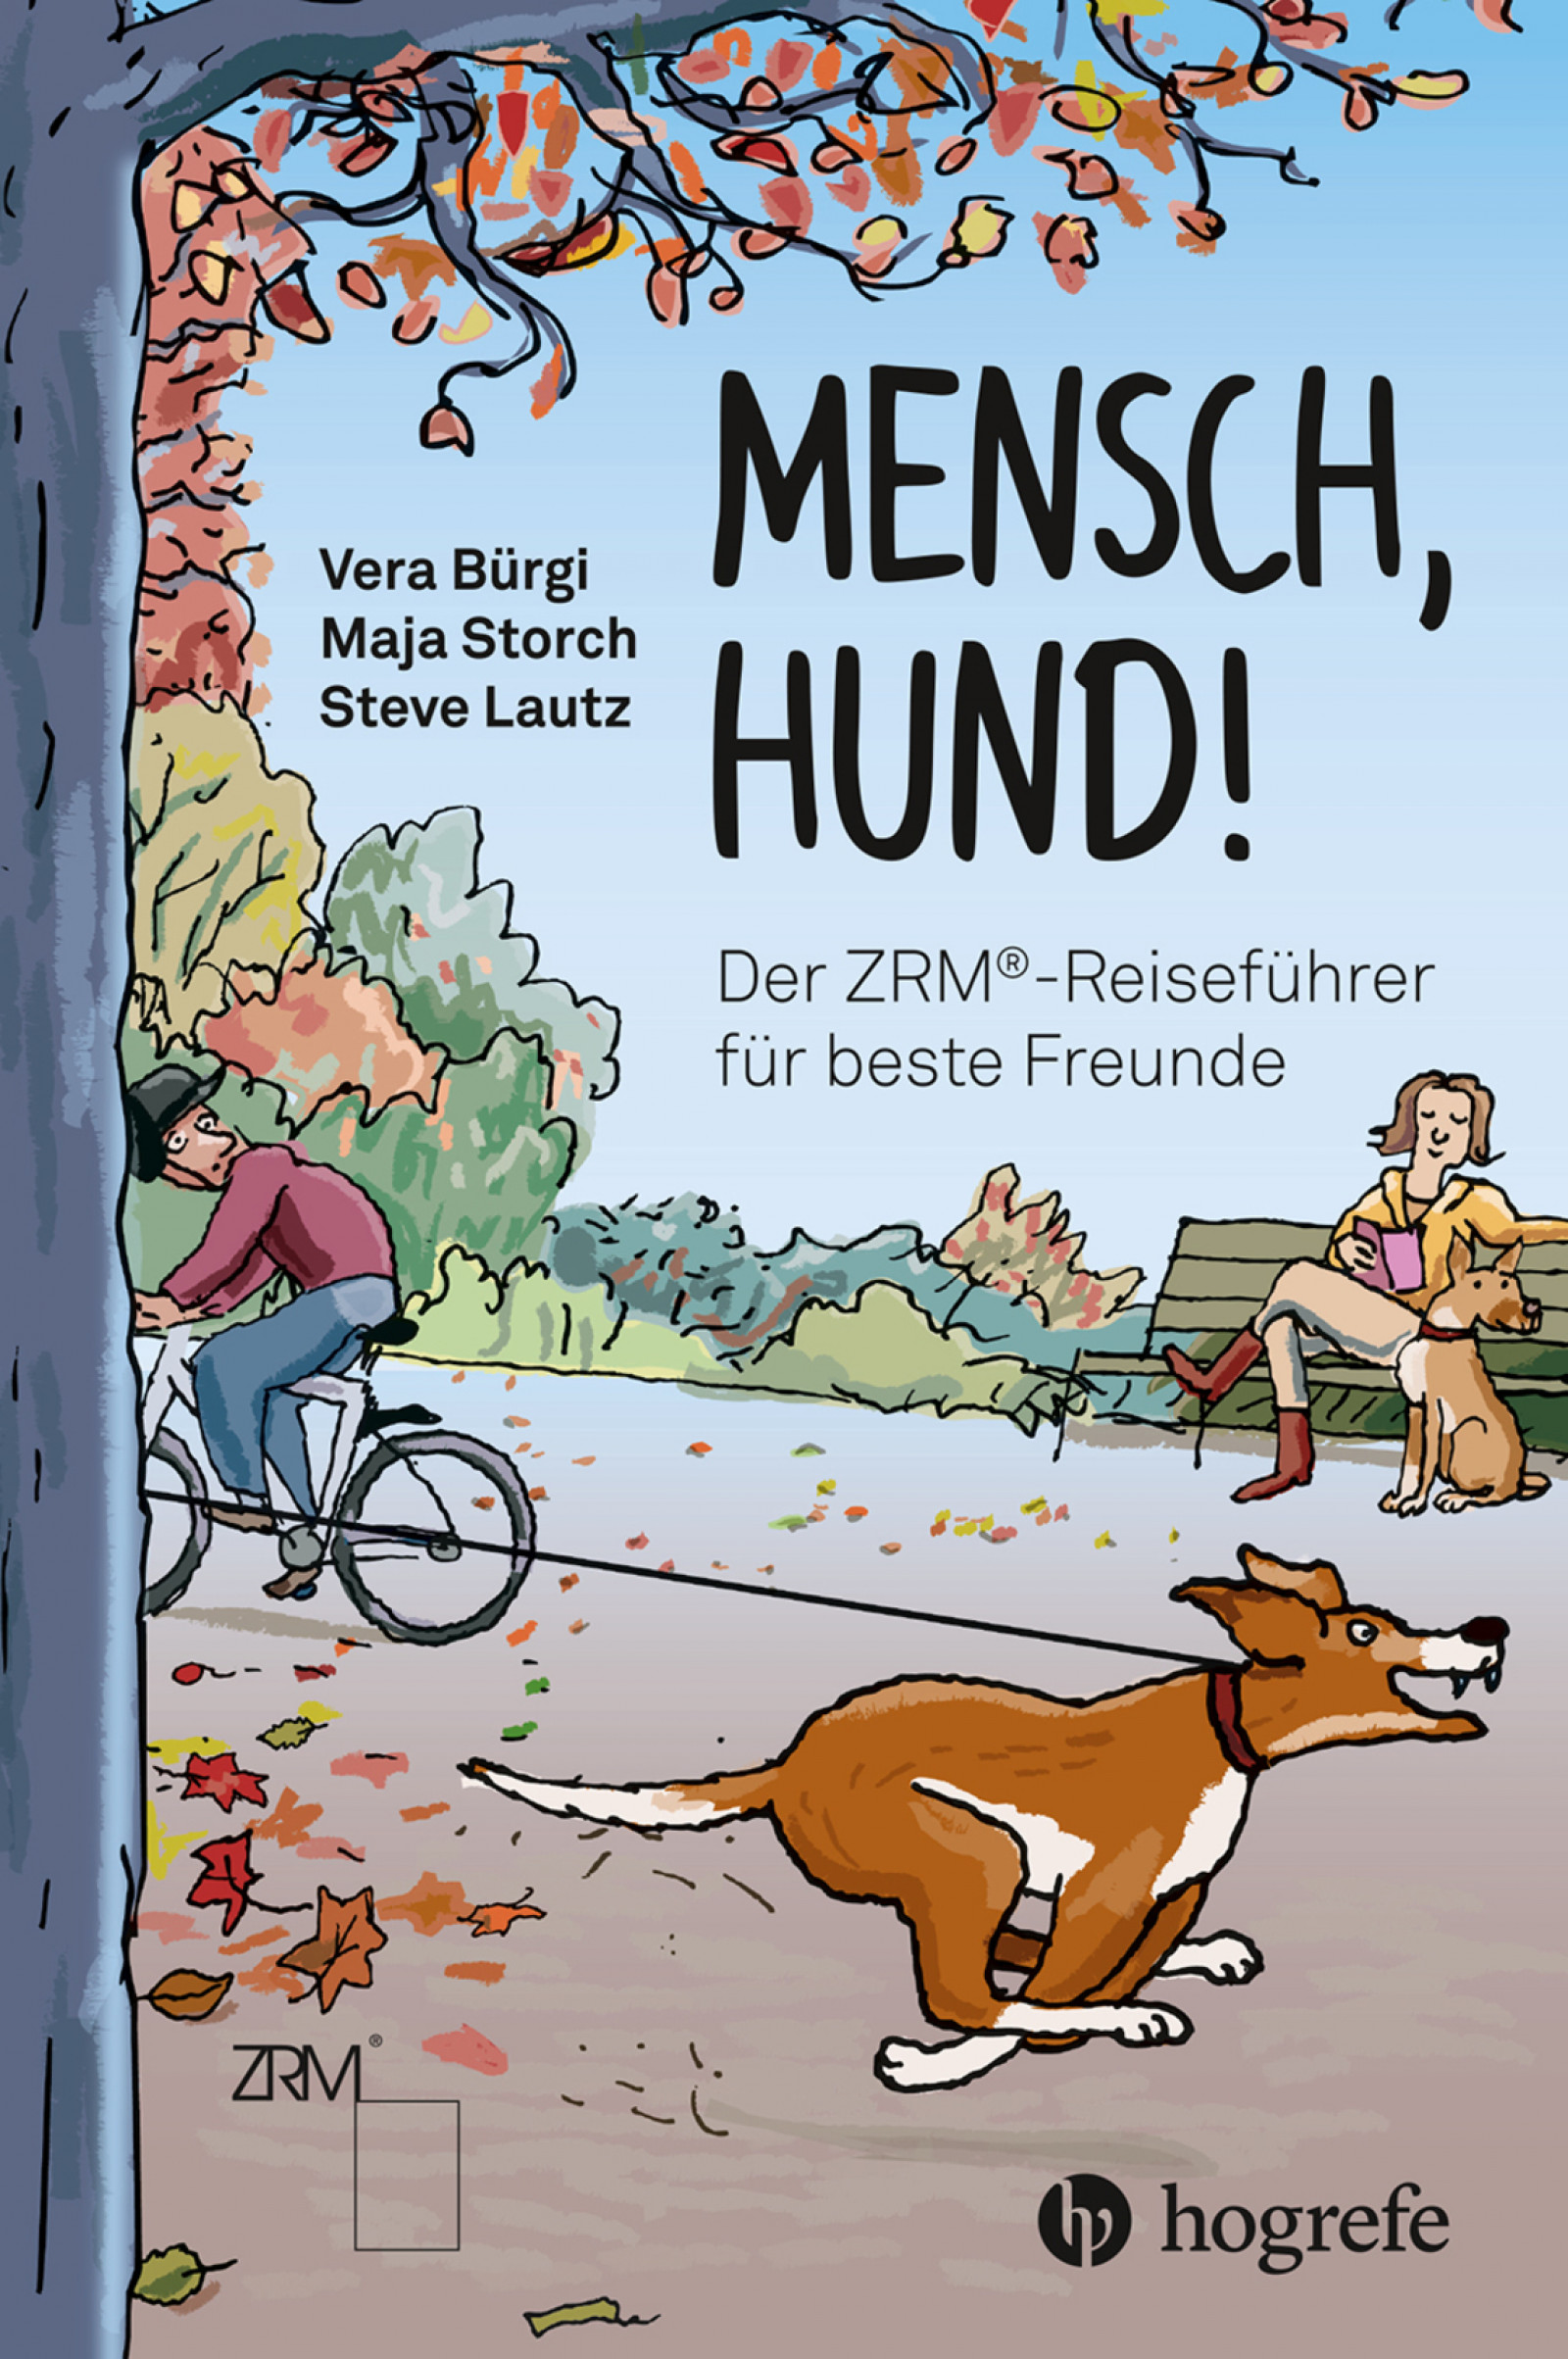 Mensch, Hund! (deutsch language, Hogrefe)